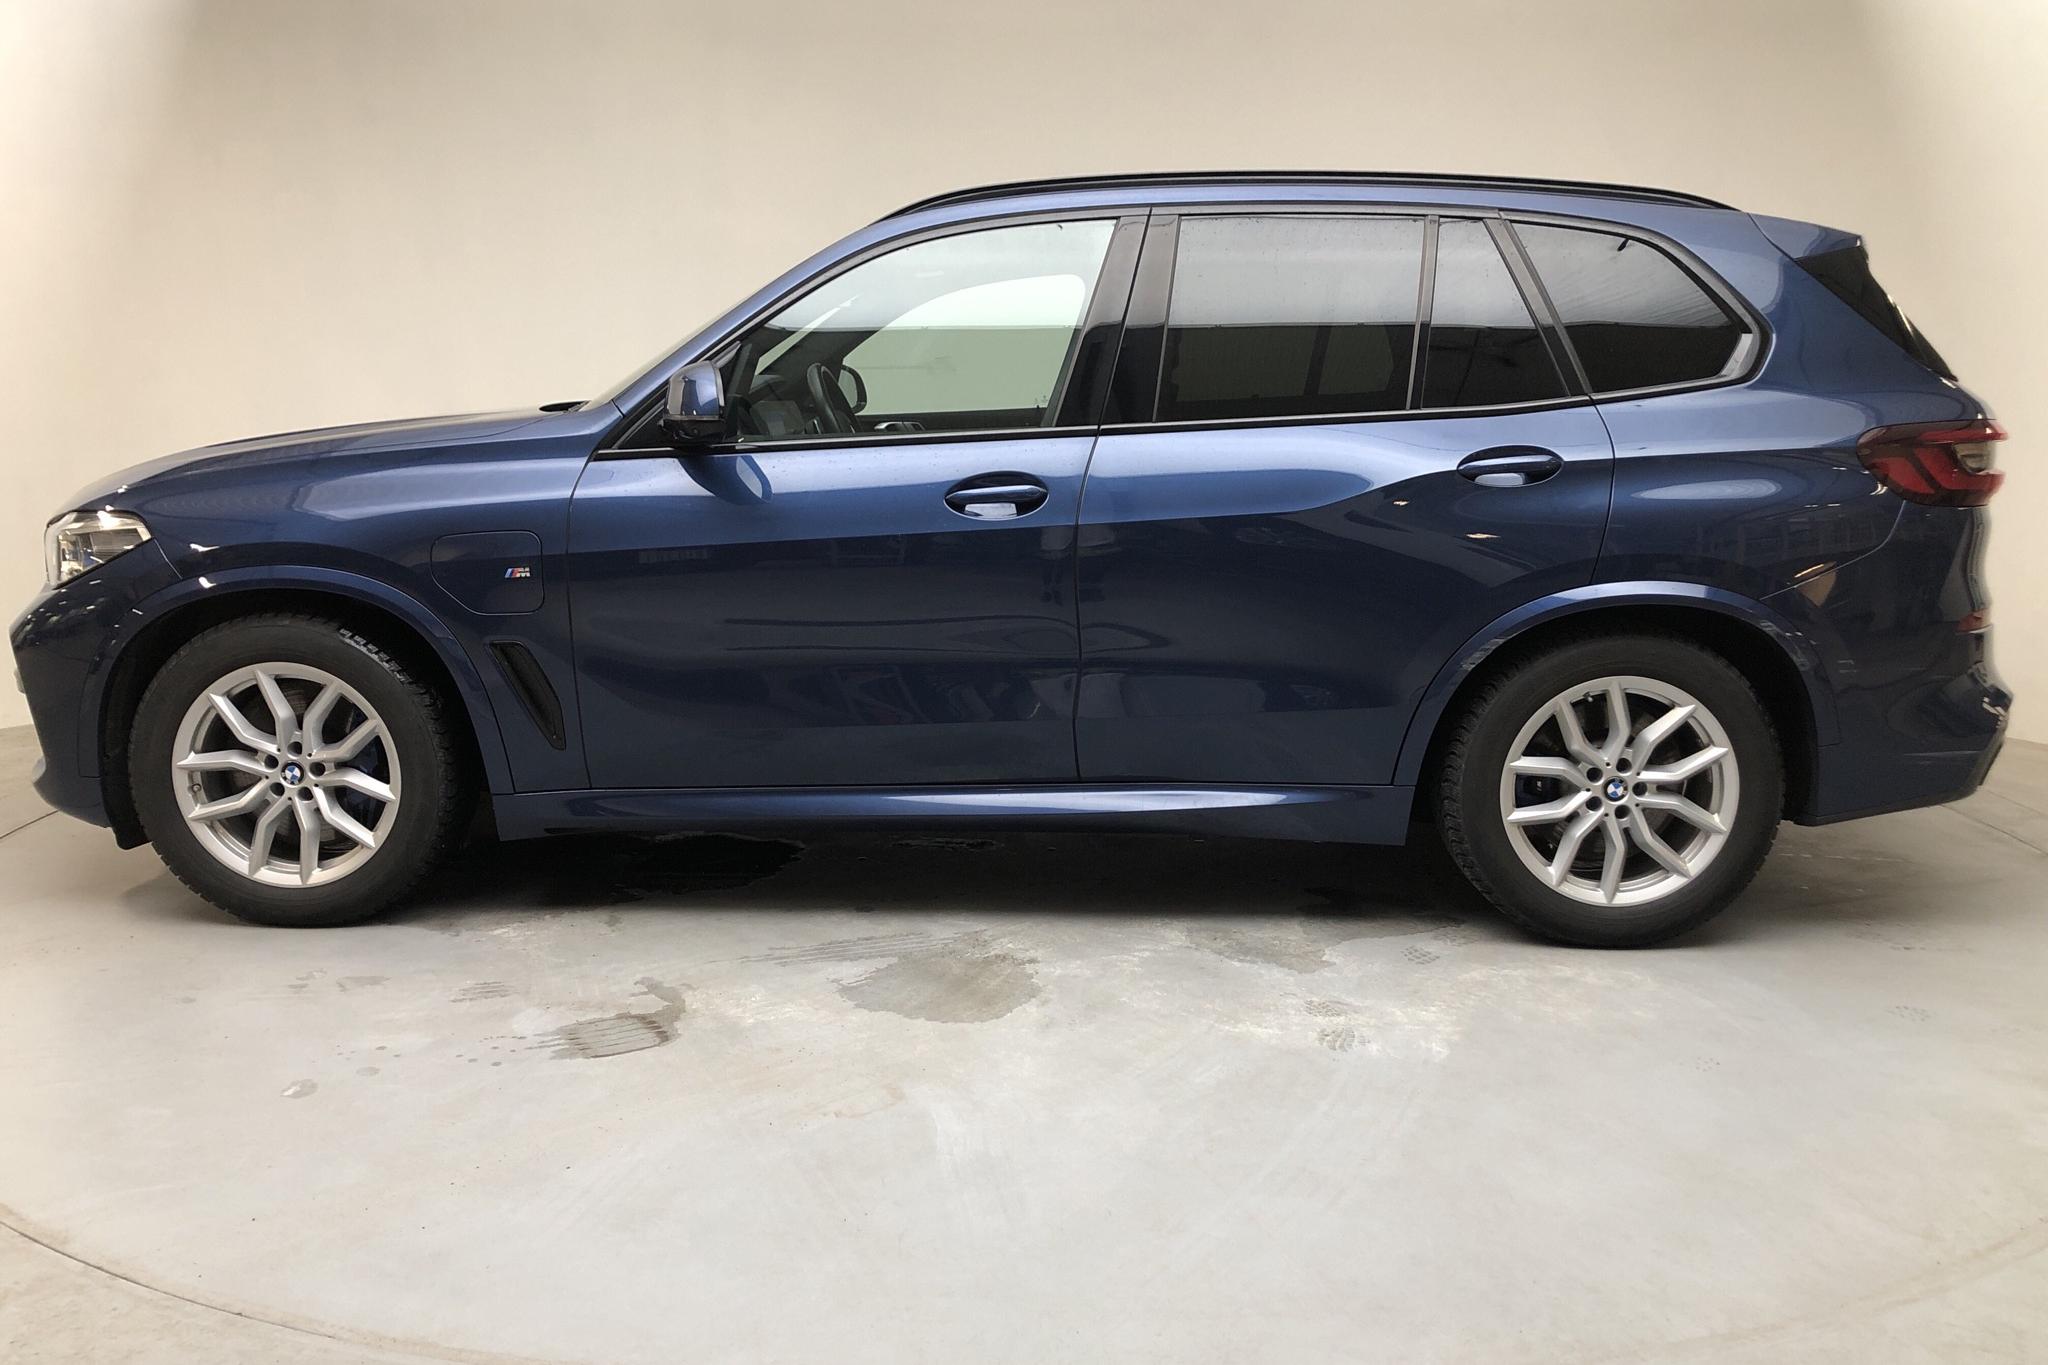 BMW X5 xDrive45e, G05 (394hk) - 64 100 km - Automatic - blue - 2020